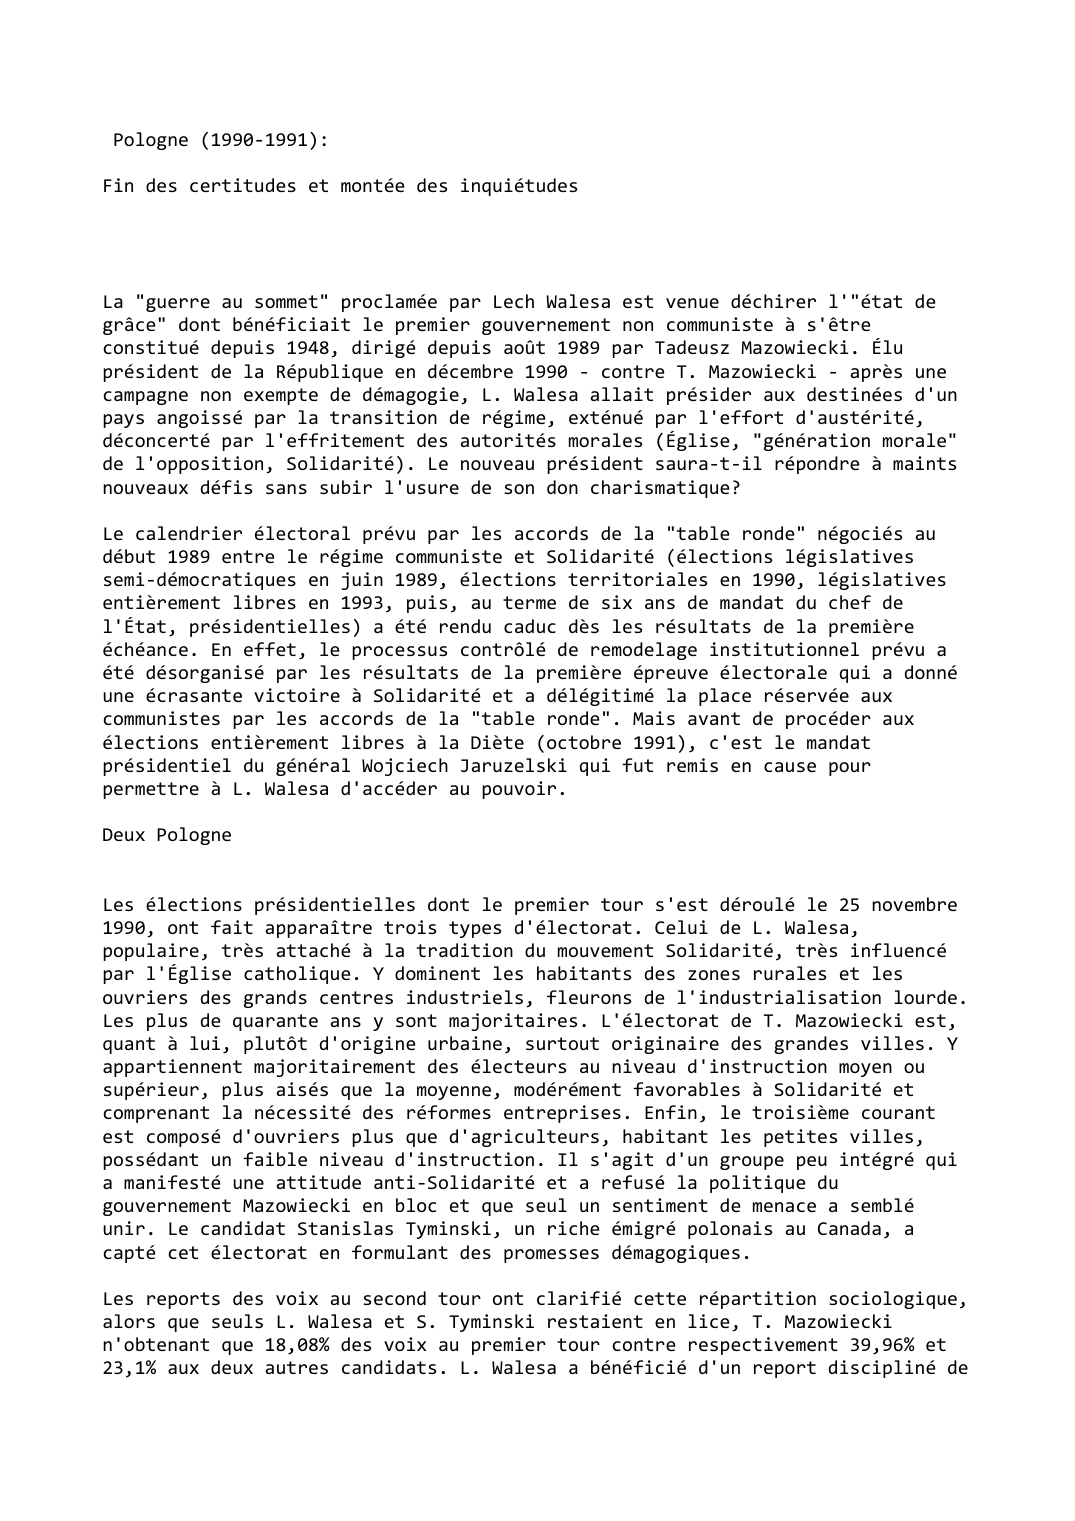 Prévisualisation du document Pologne (1990-1991):

Fin des certitudes et montée des inquiétudes